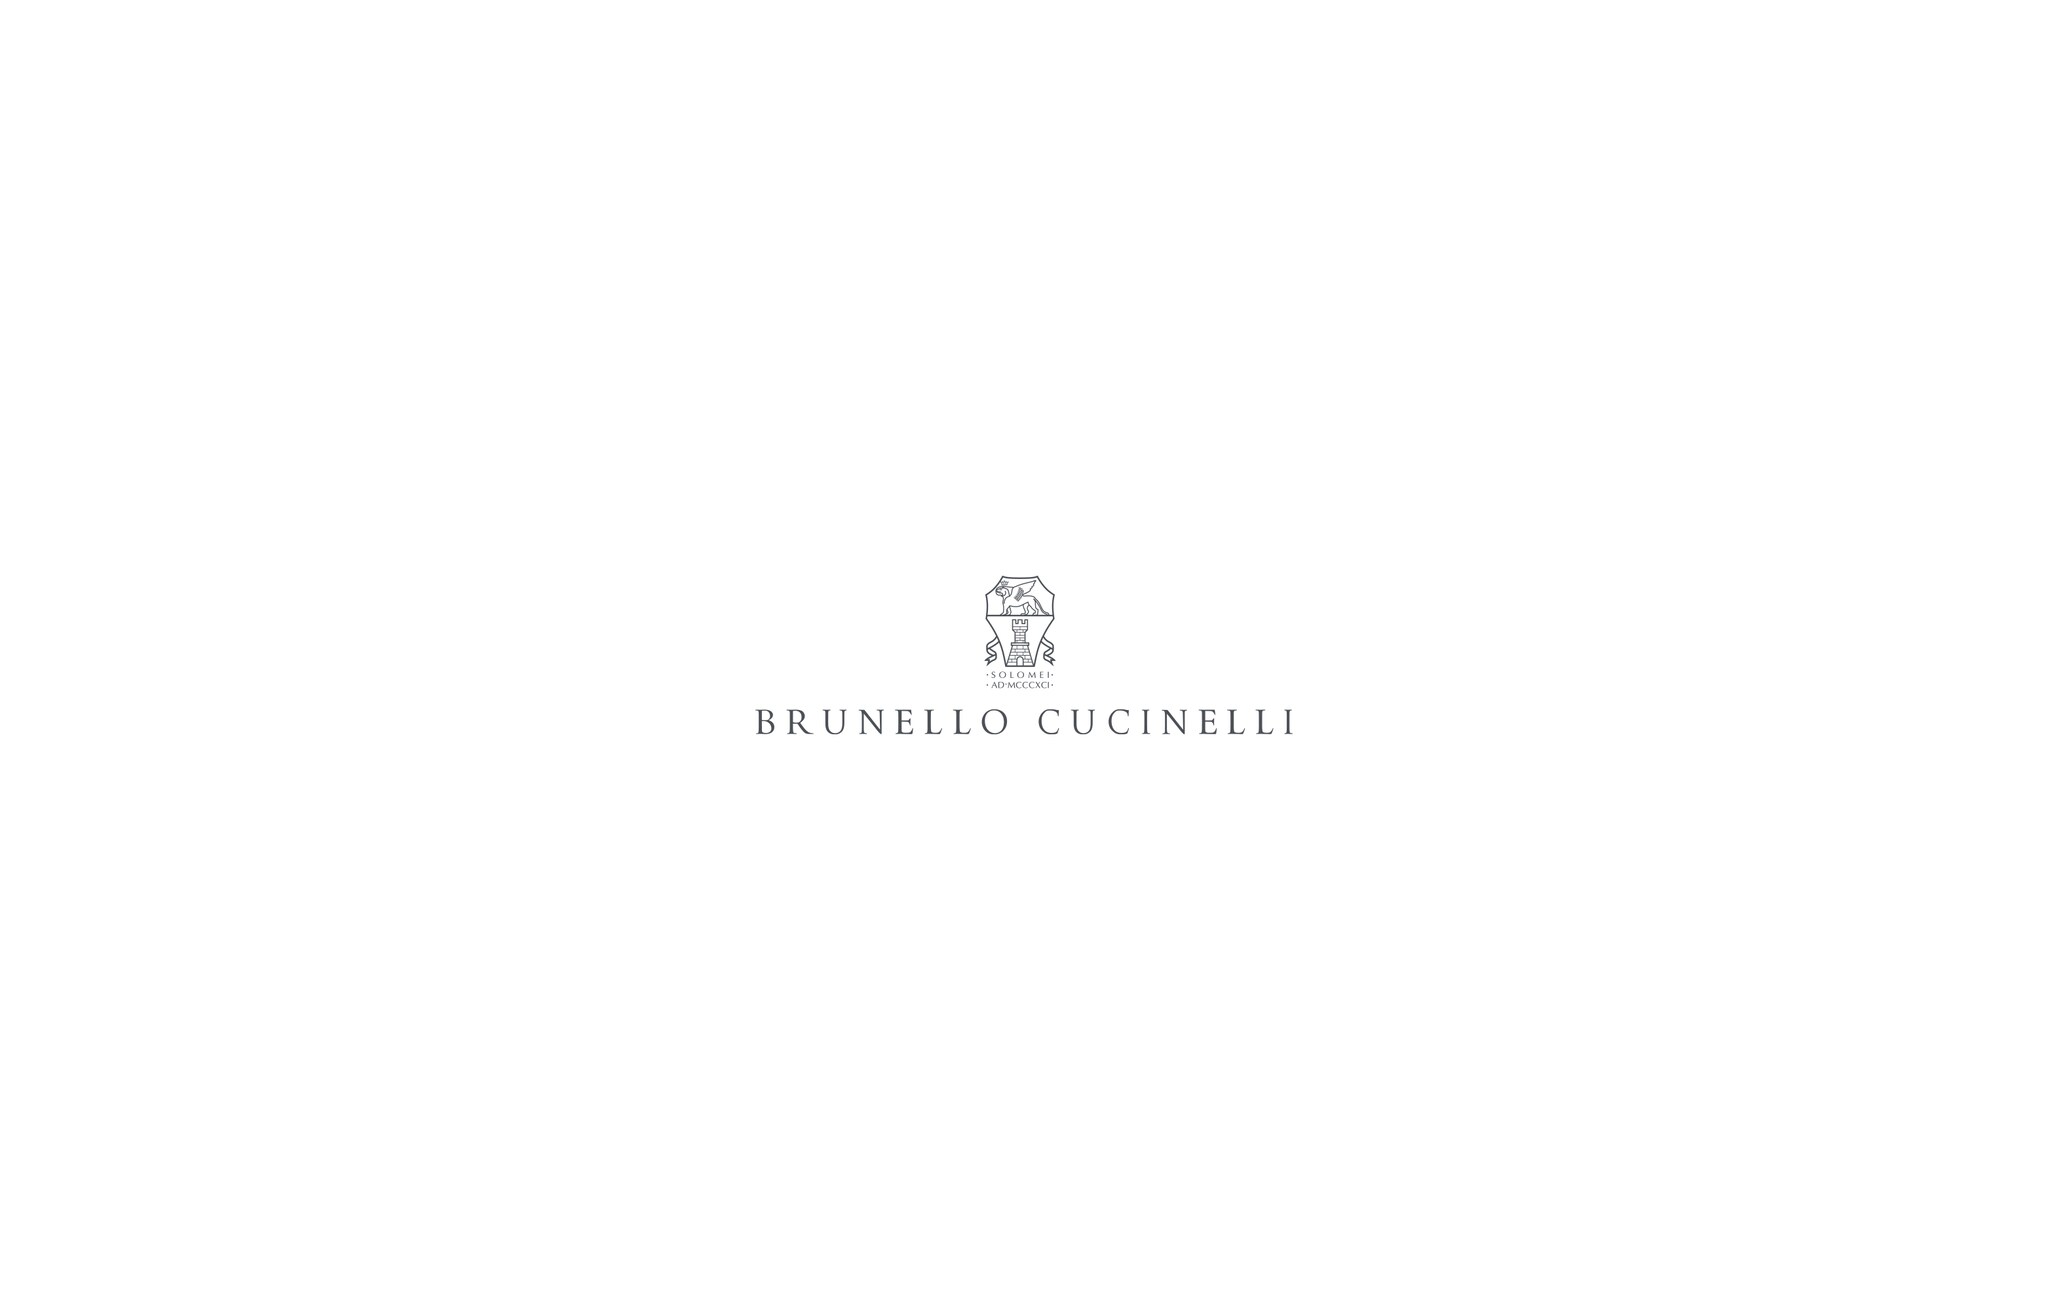  带风帽的羽绒服 牛仔蓝 男款 - Brunello Cucinelli 